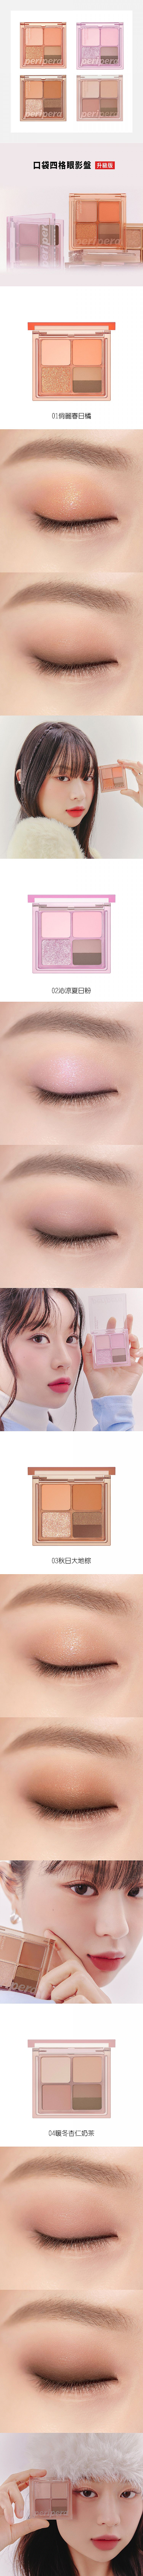 韓國 眼妝 眼妝 眼影 眼影盤 眼妝